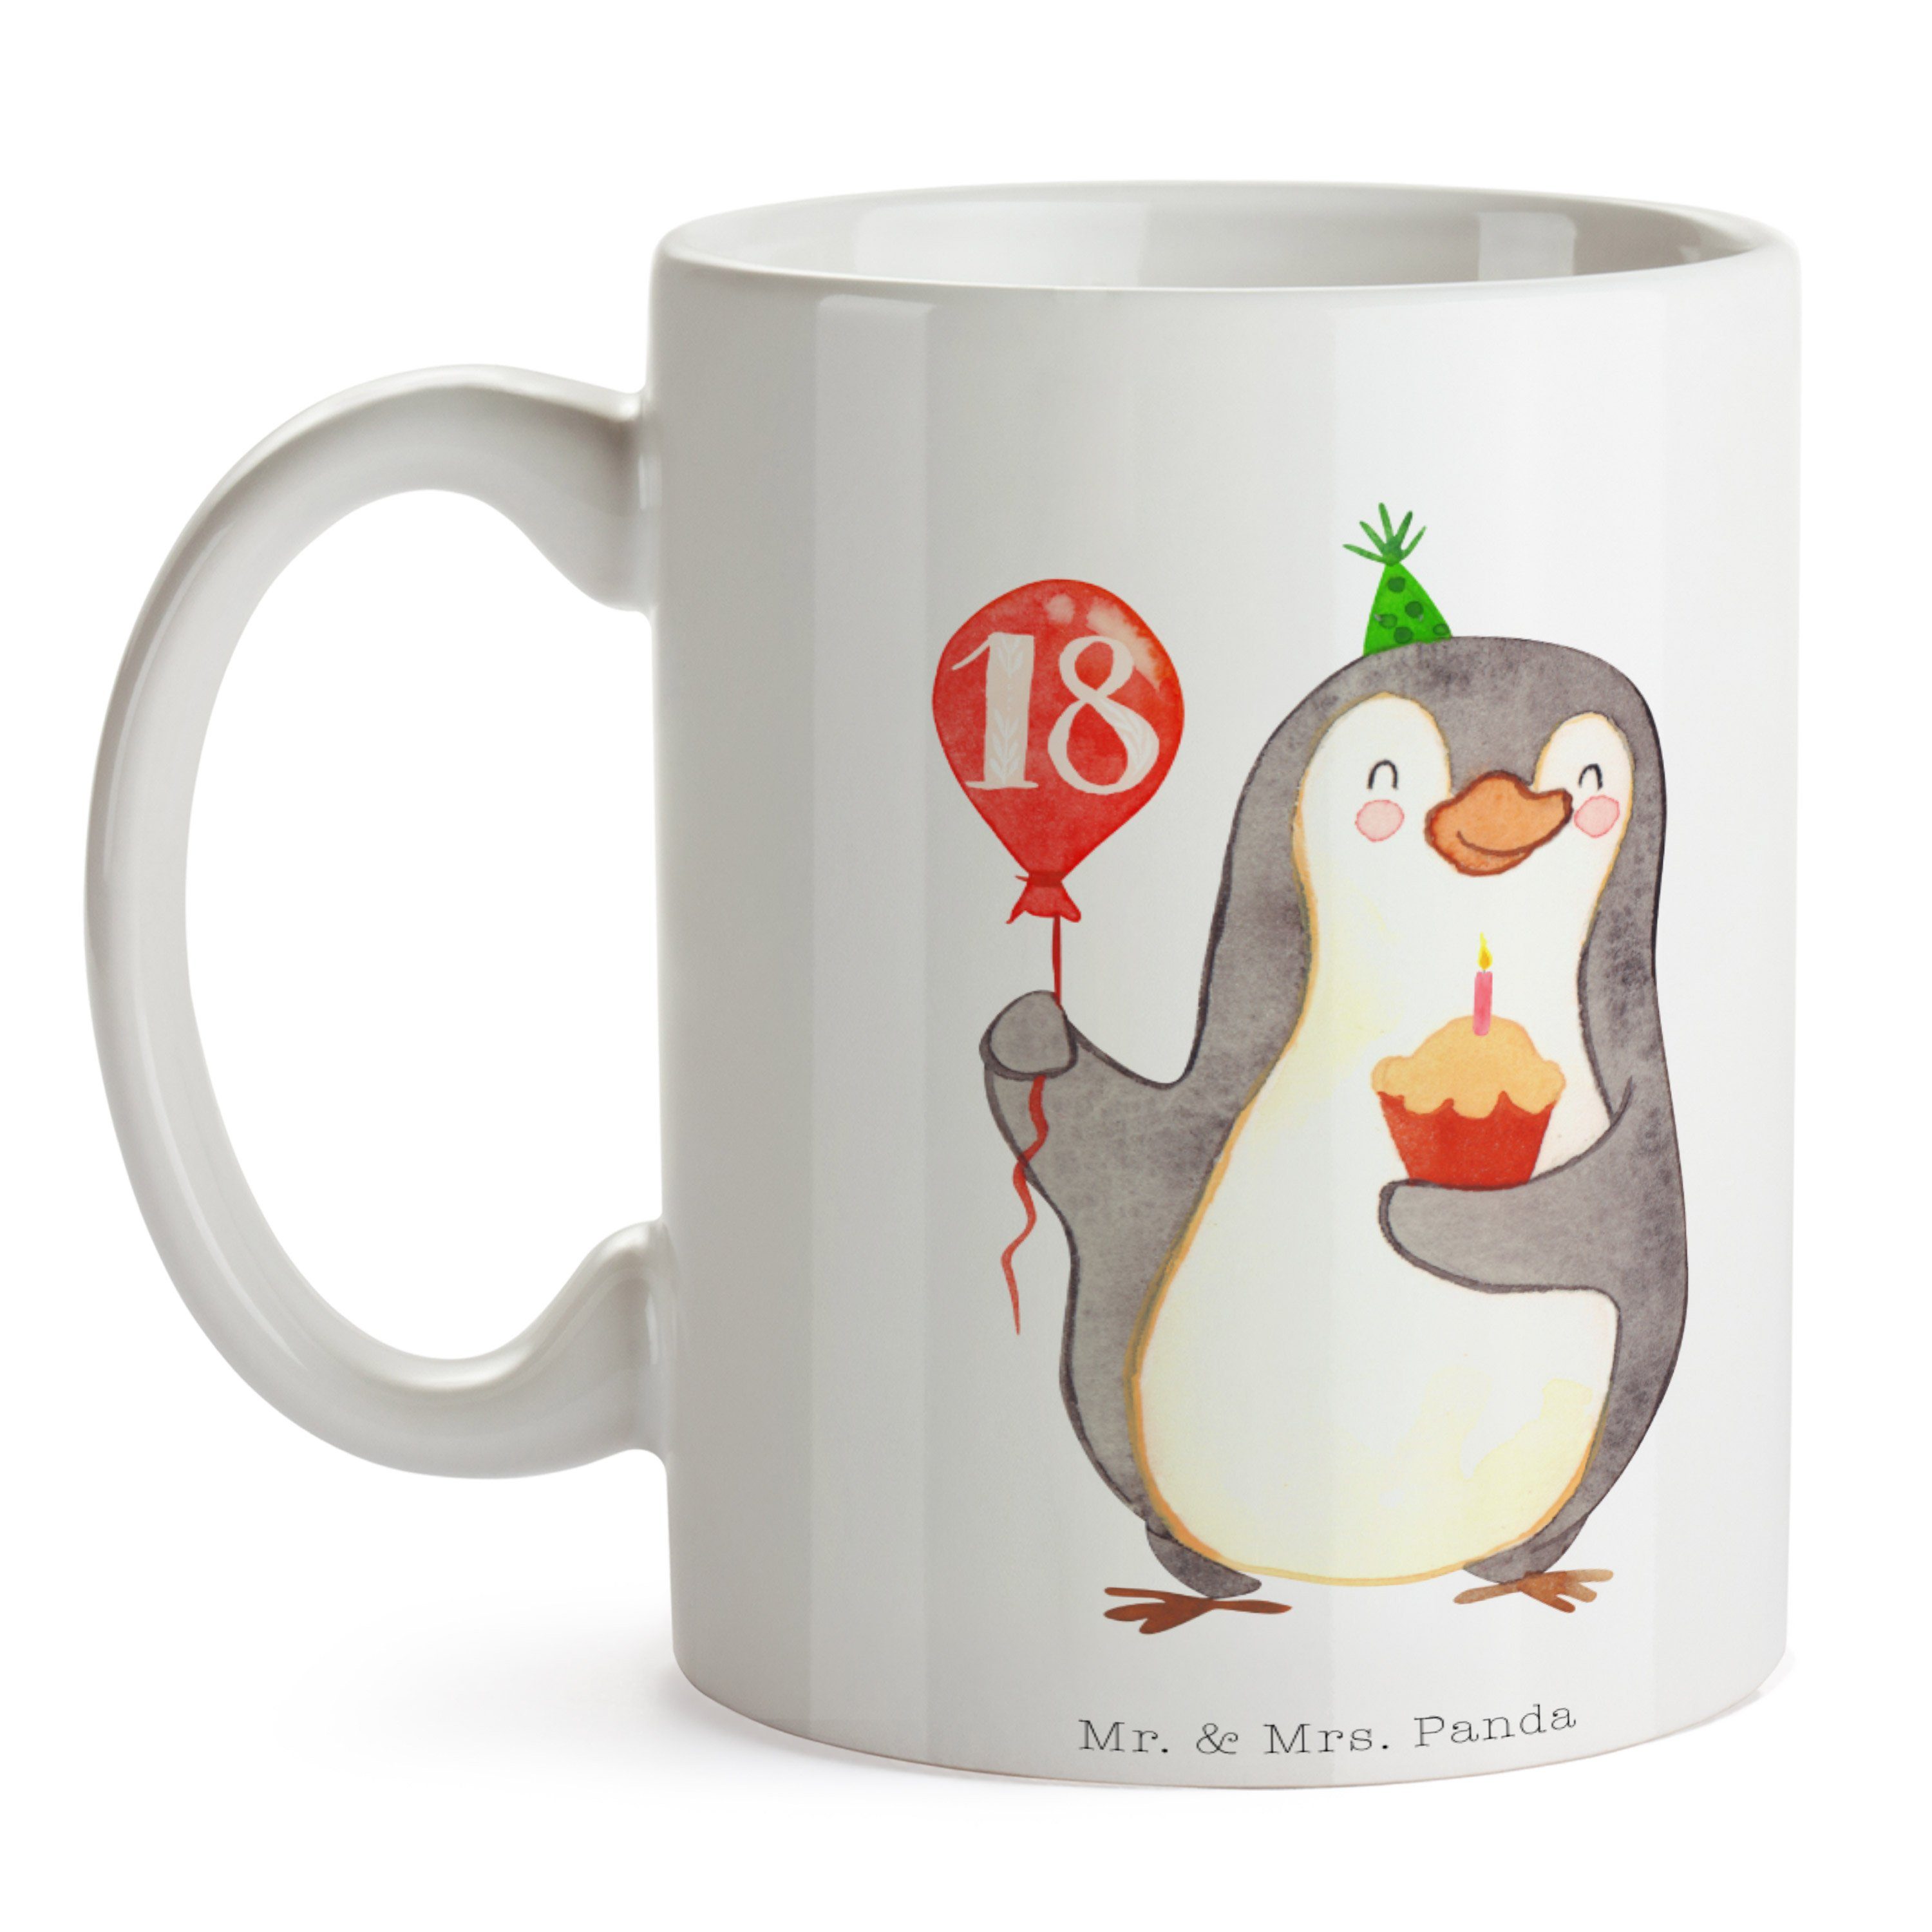 & Mr. Mrs. - Geburtstagsgesch, Luftballon - Keramik Tasse Weiß 18. Pinguin Panda Geburtstag Geschenk,